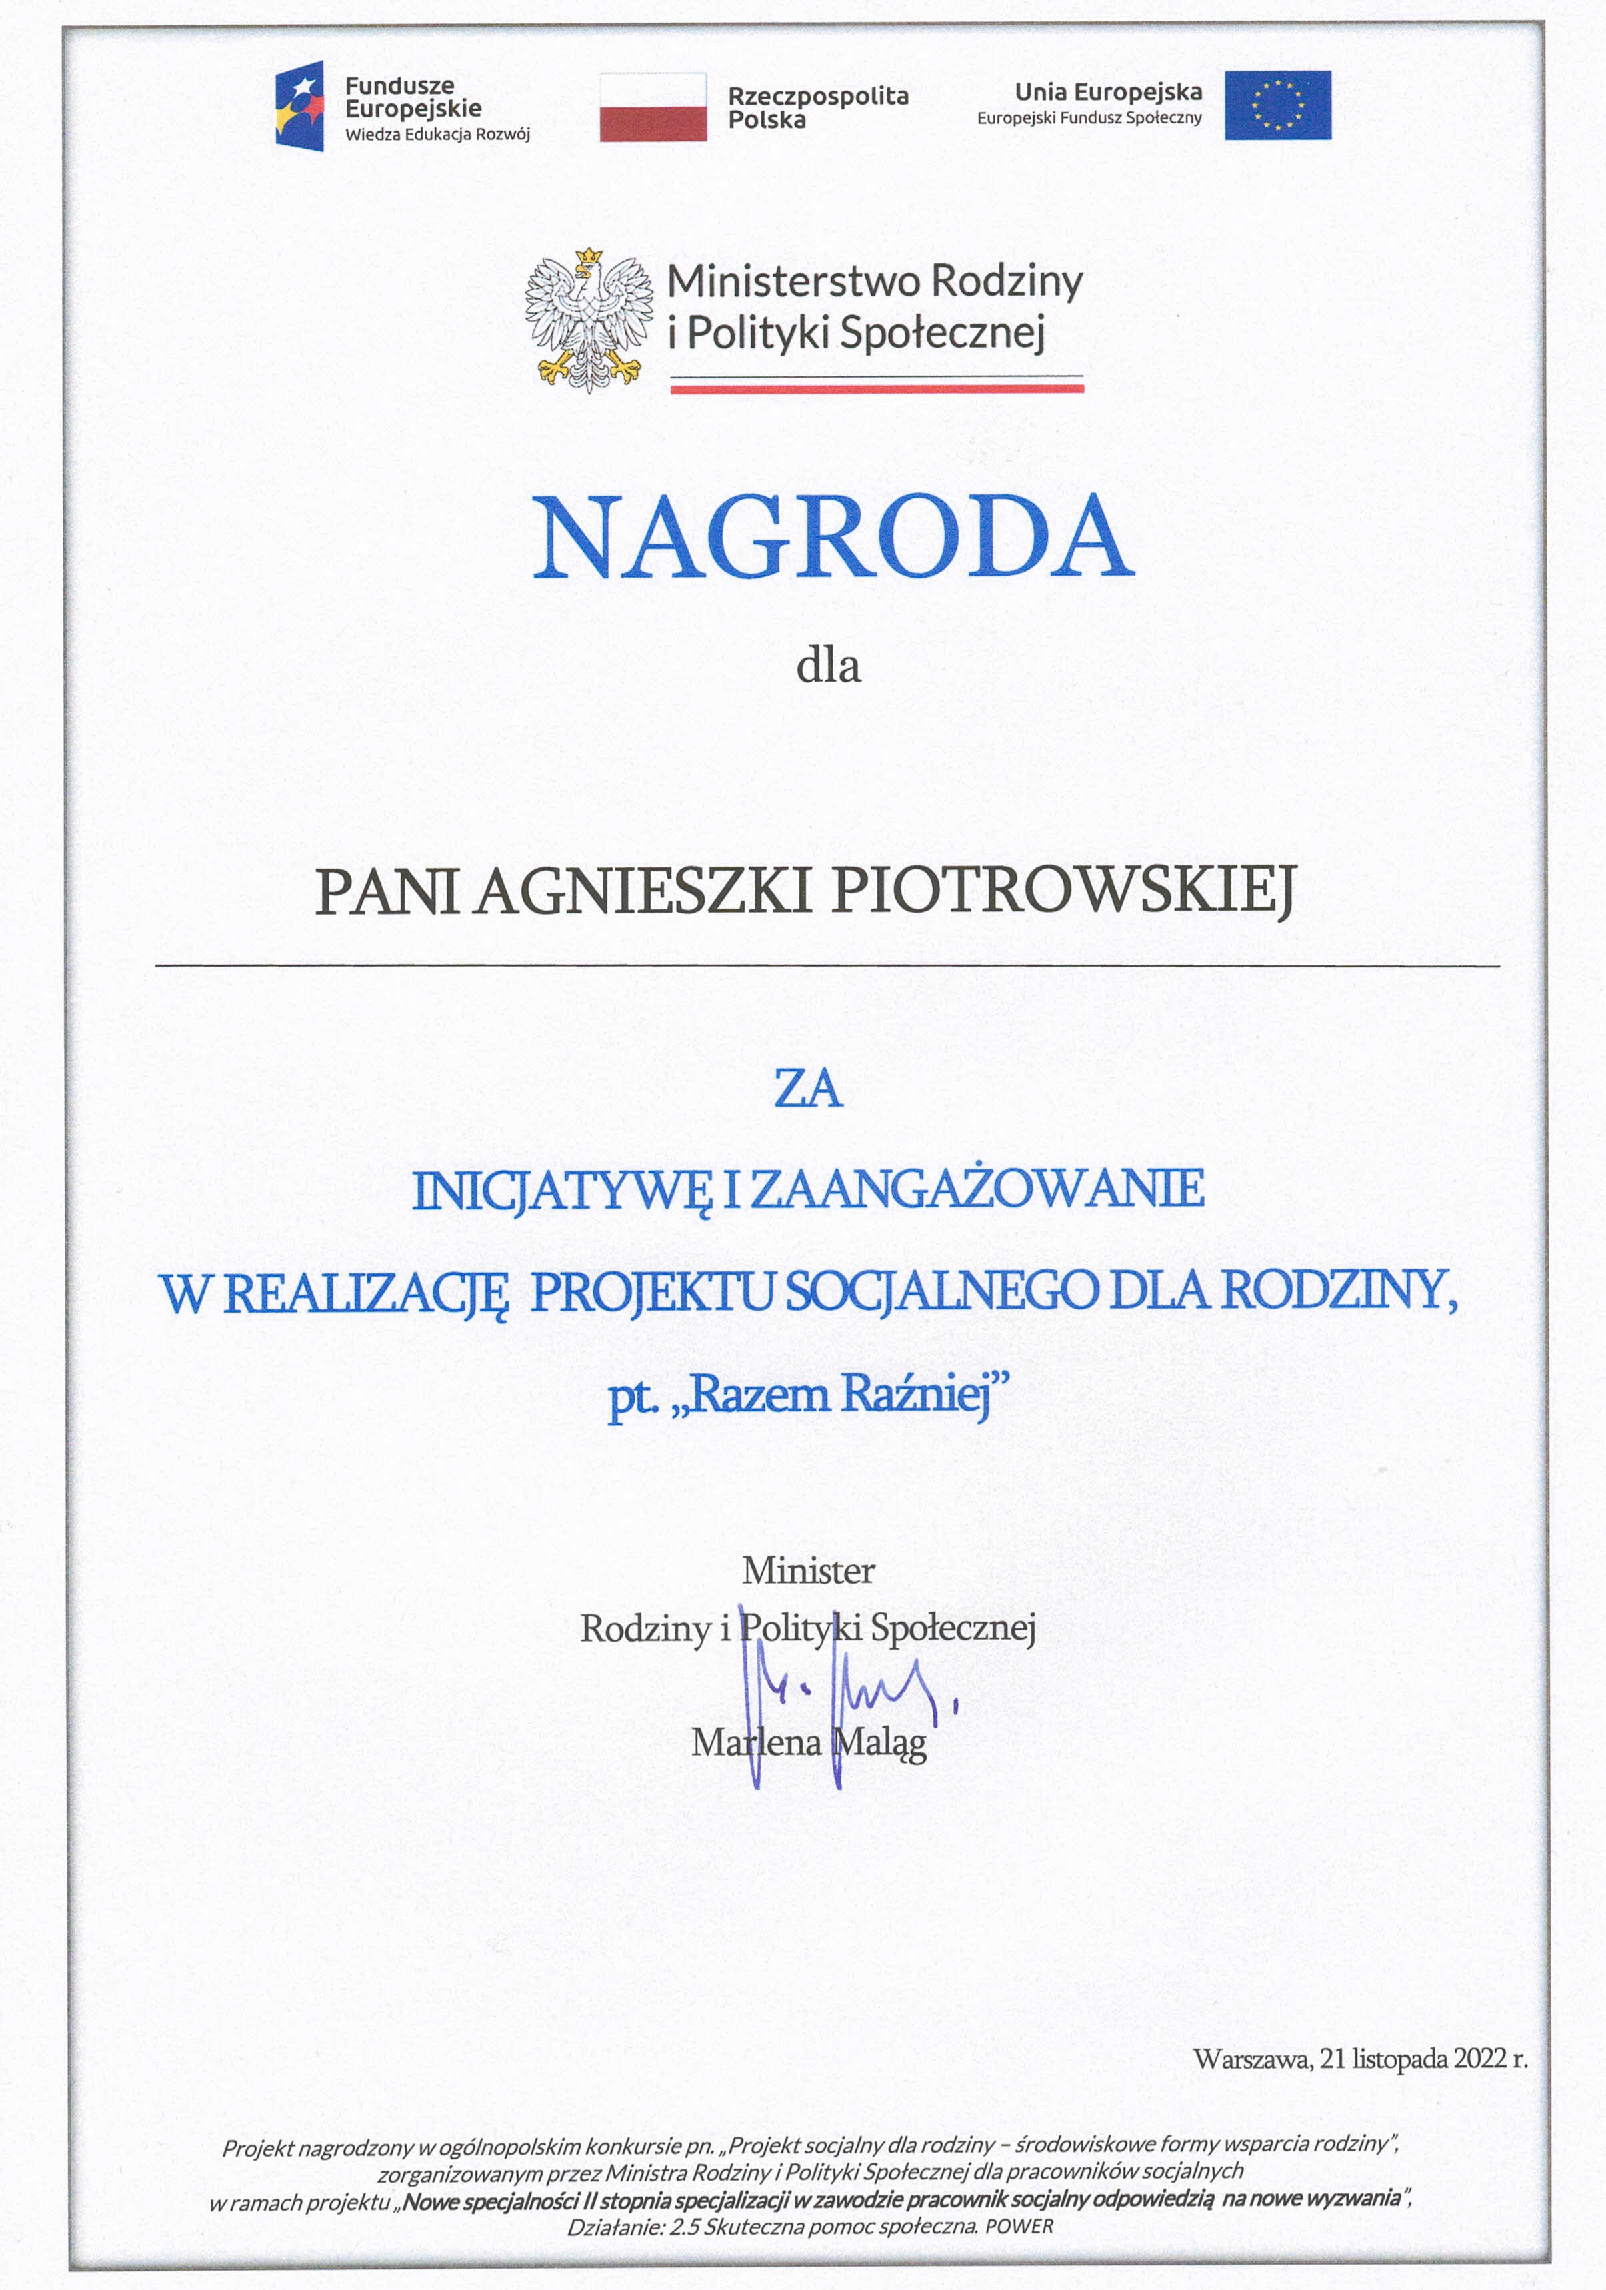 Dyplom dla Agnieszki Piotrowskiej za inicjatywę i zaangażowanie w realizację projektu socjalnego dla rodziny